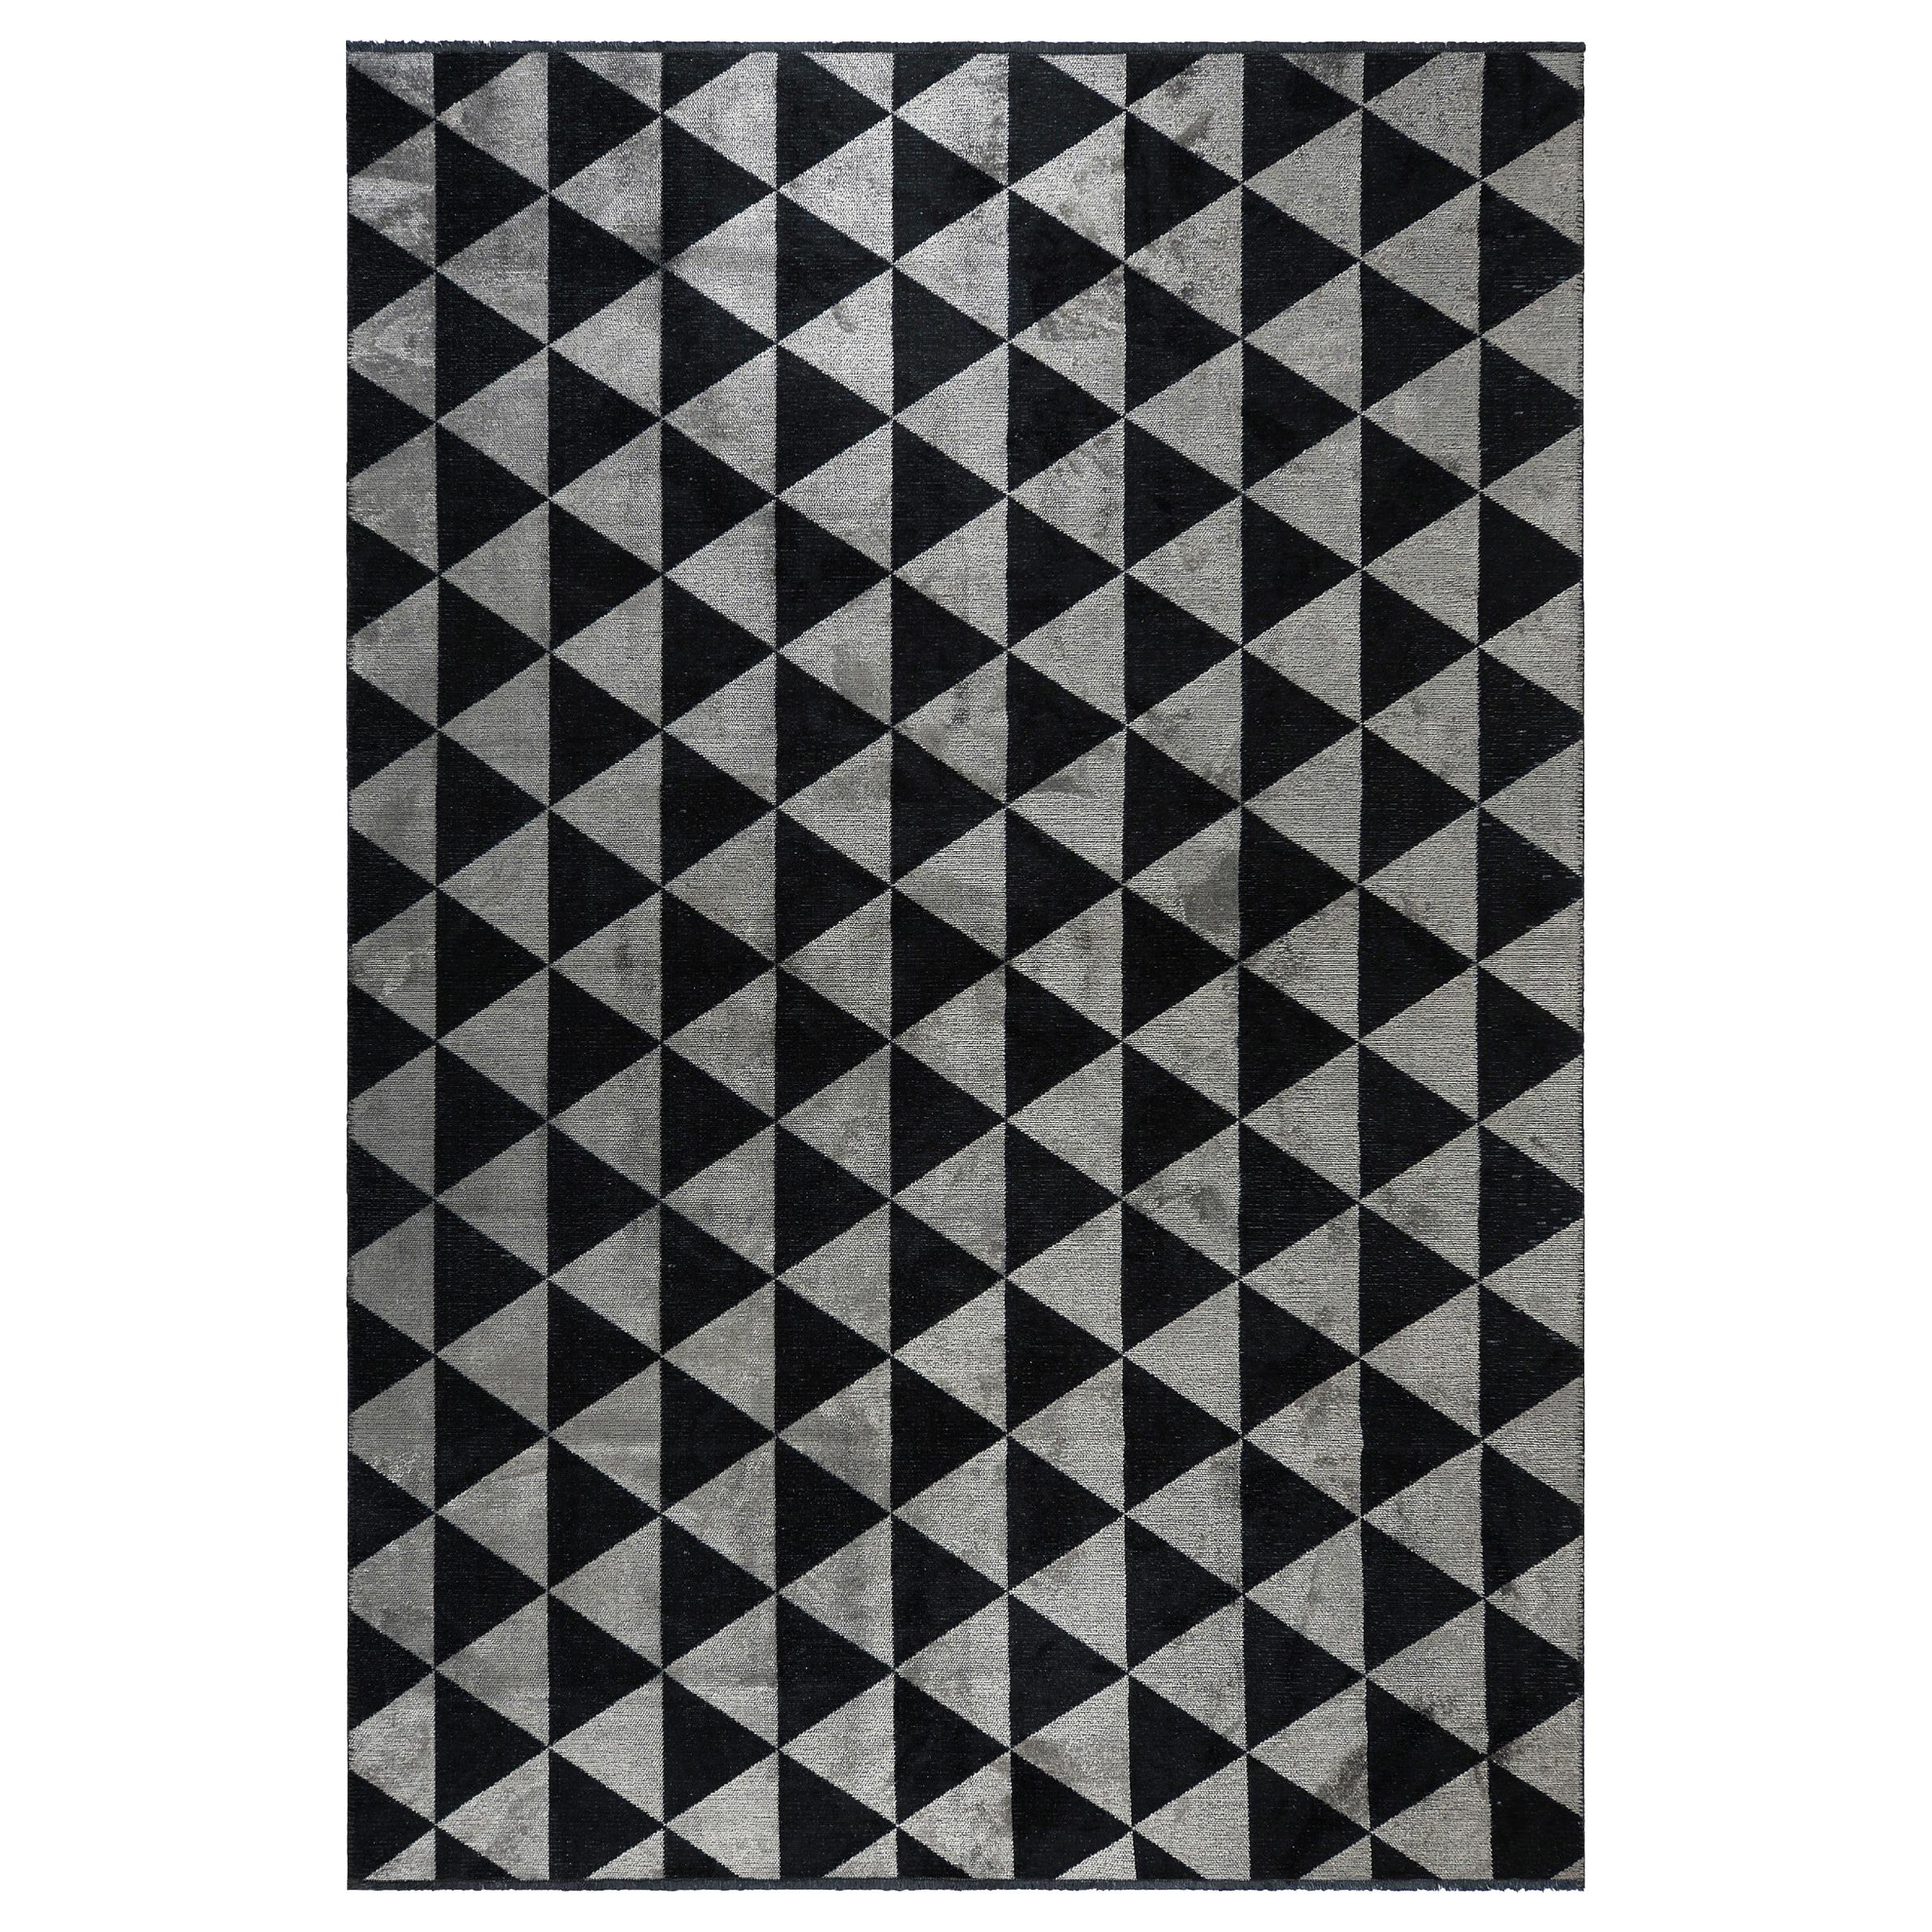 Silberner silberner, grauer und schwarzer Dreiecks-Teppich mit geometrischem Muster und Glanz